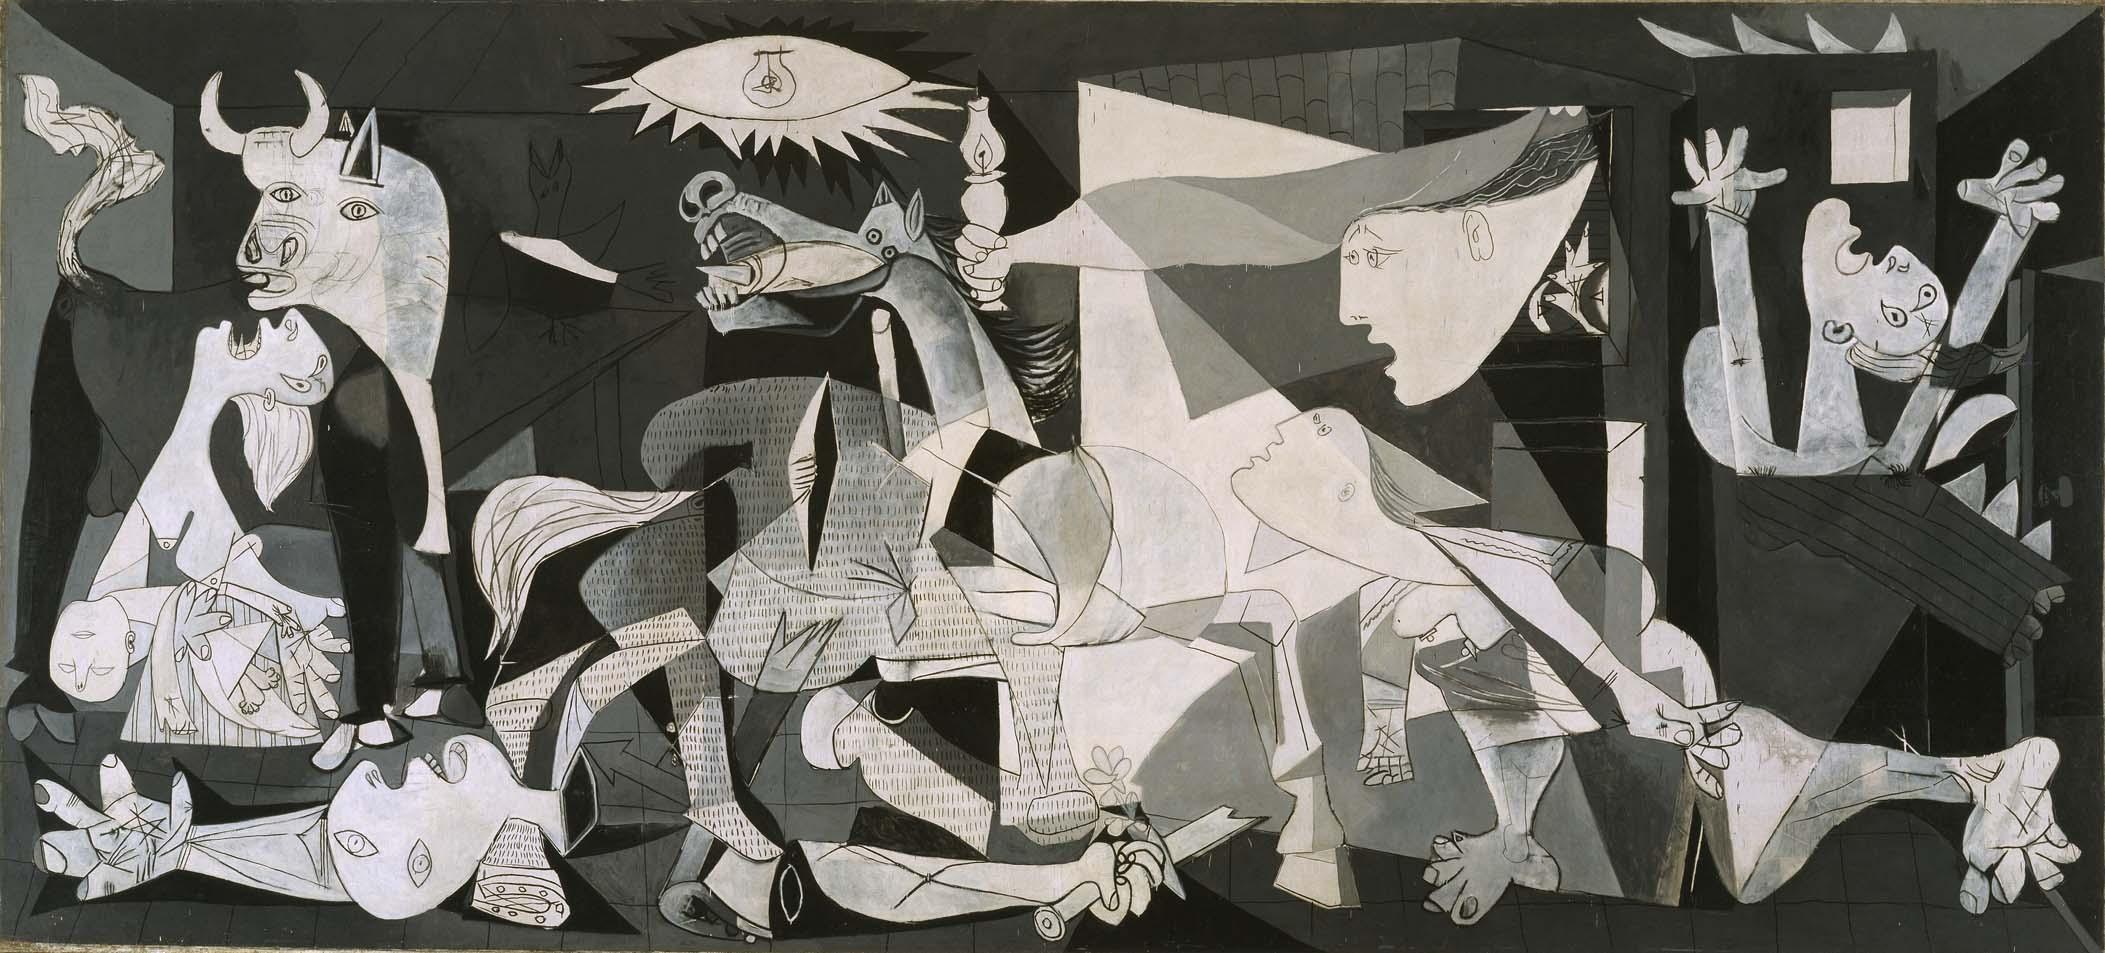 7. Picasso_Guernica_1937.jpg